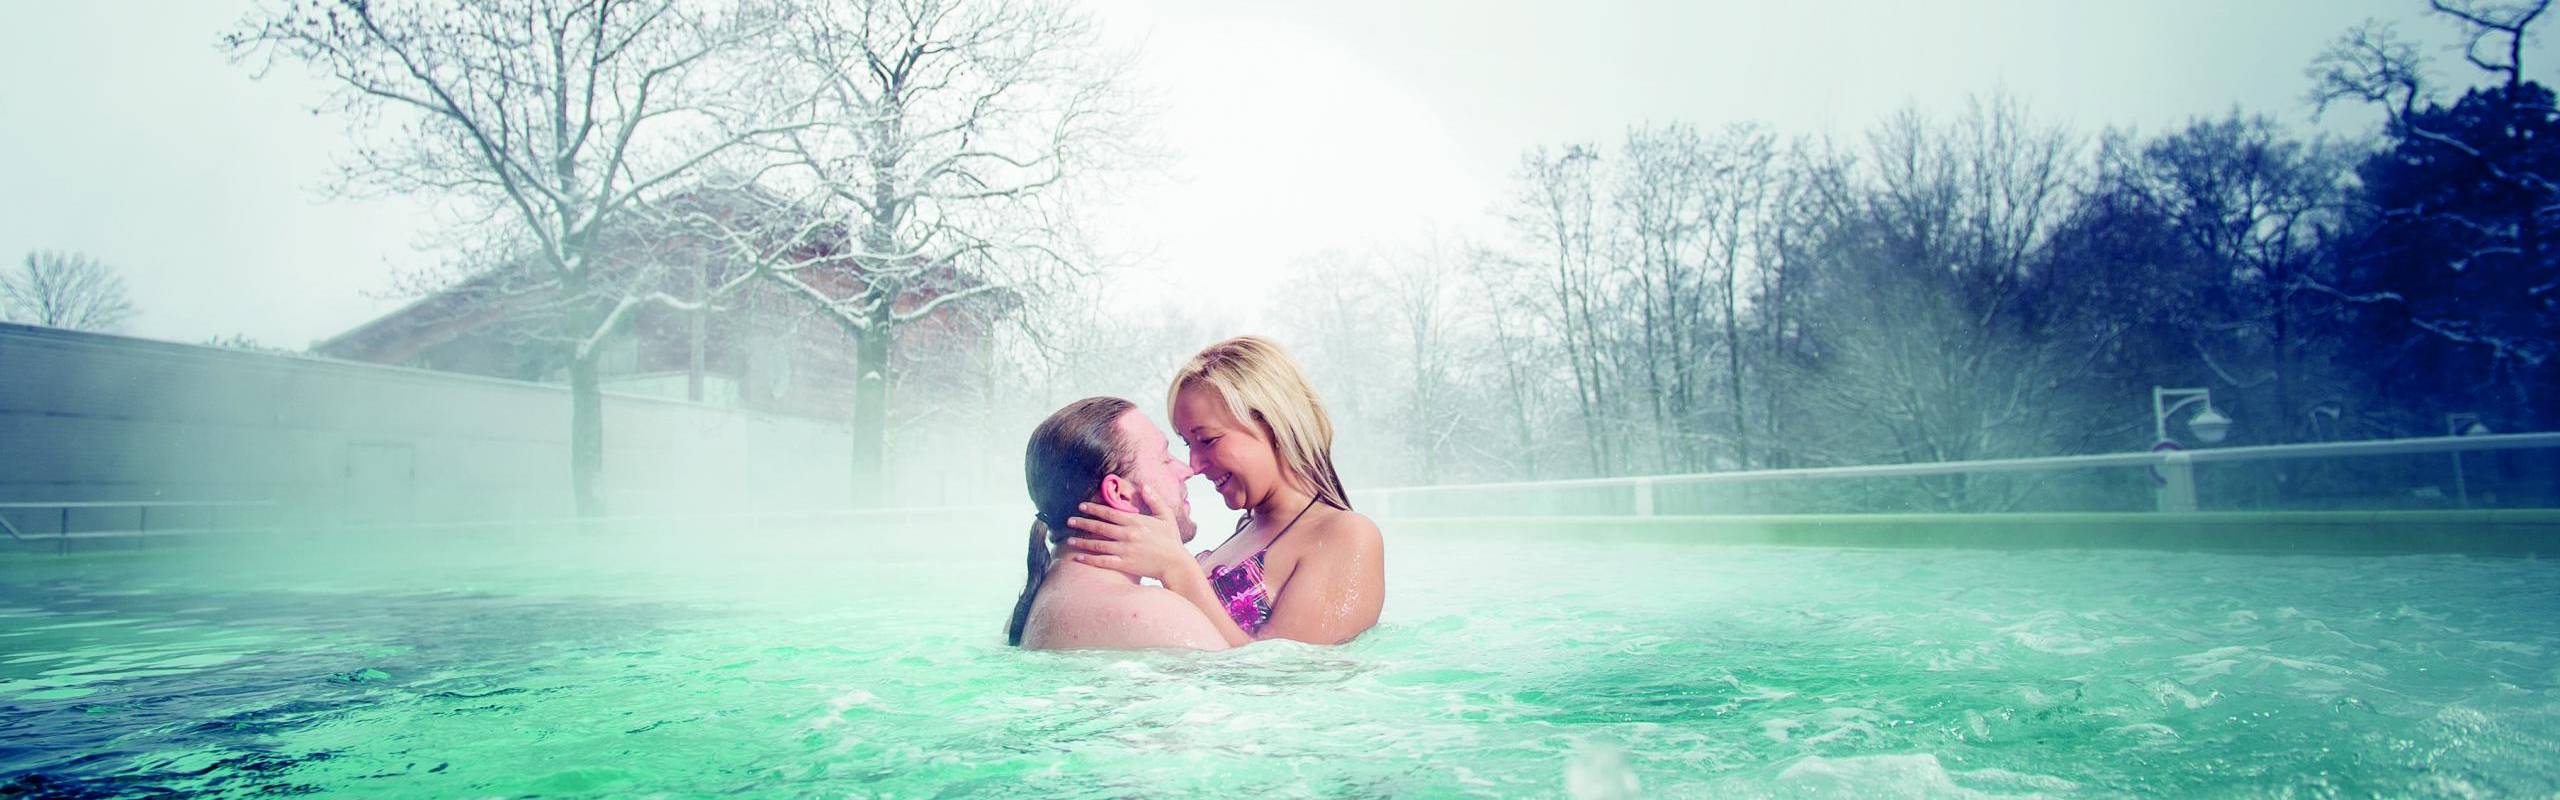 Solequell Außenbecken badendes Paar im Winter